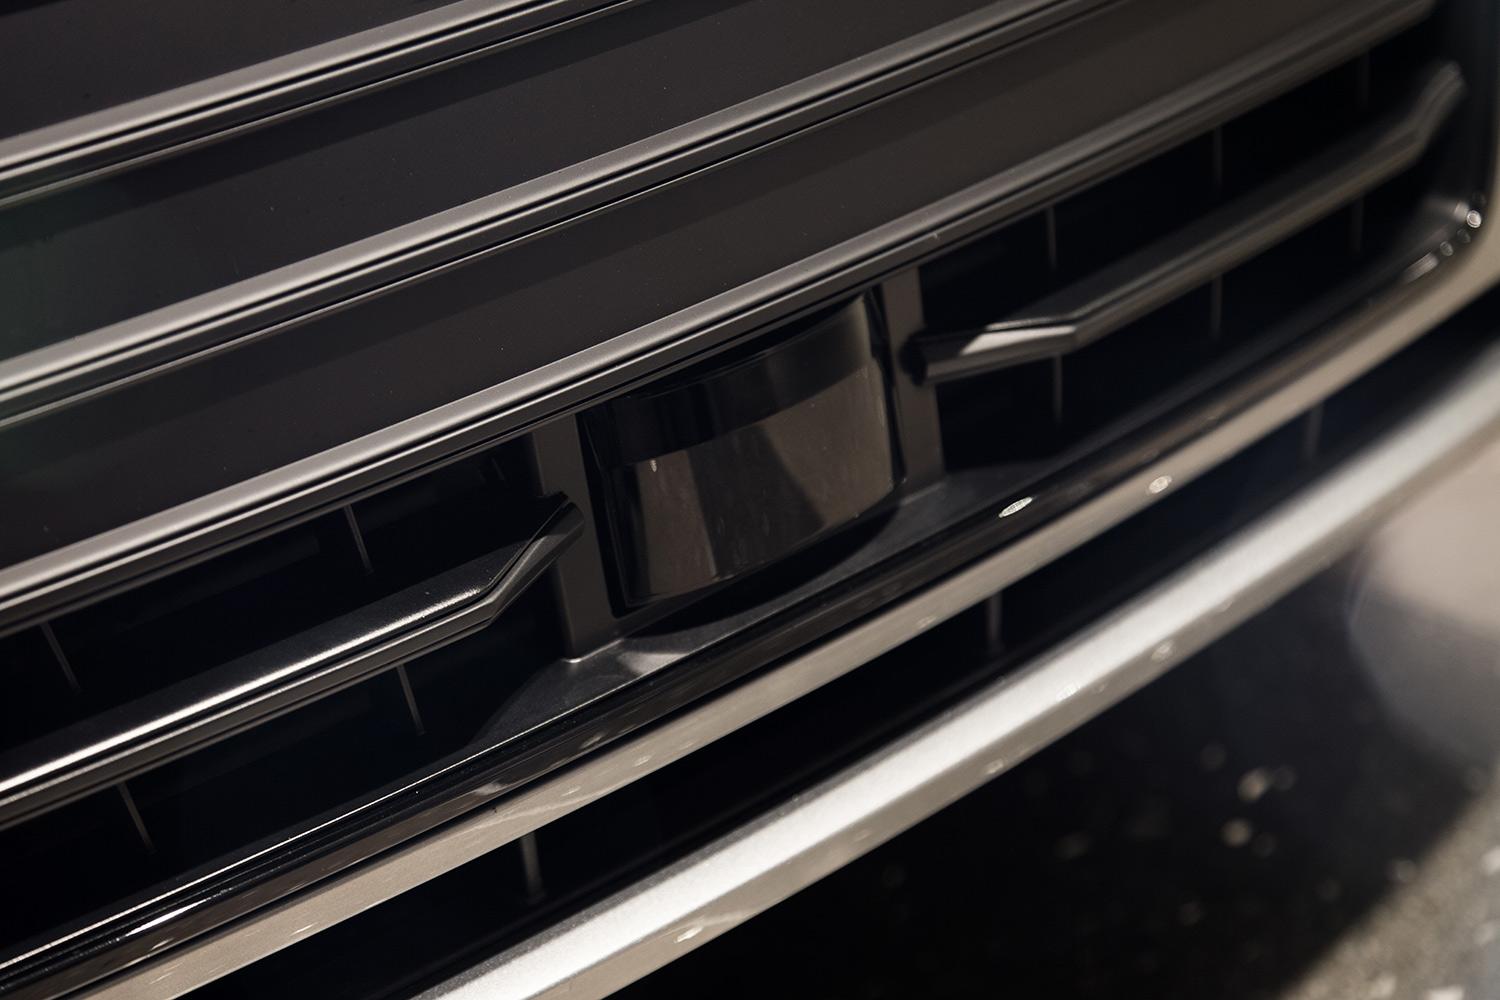 Audi A7 Autonomous exterior rear sensor